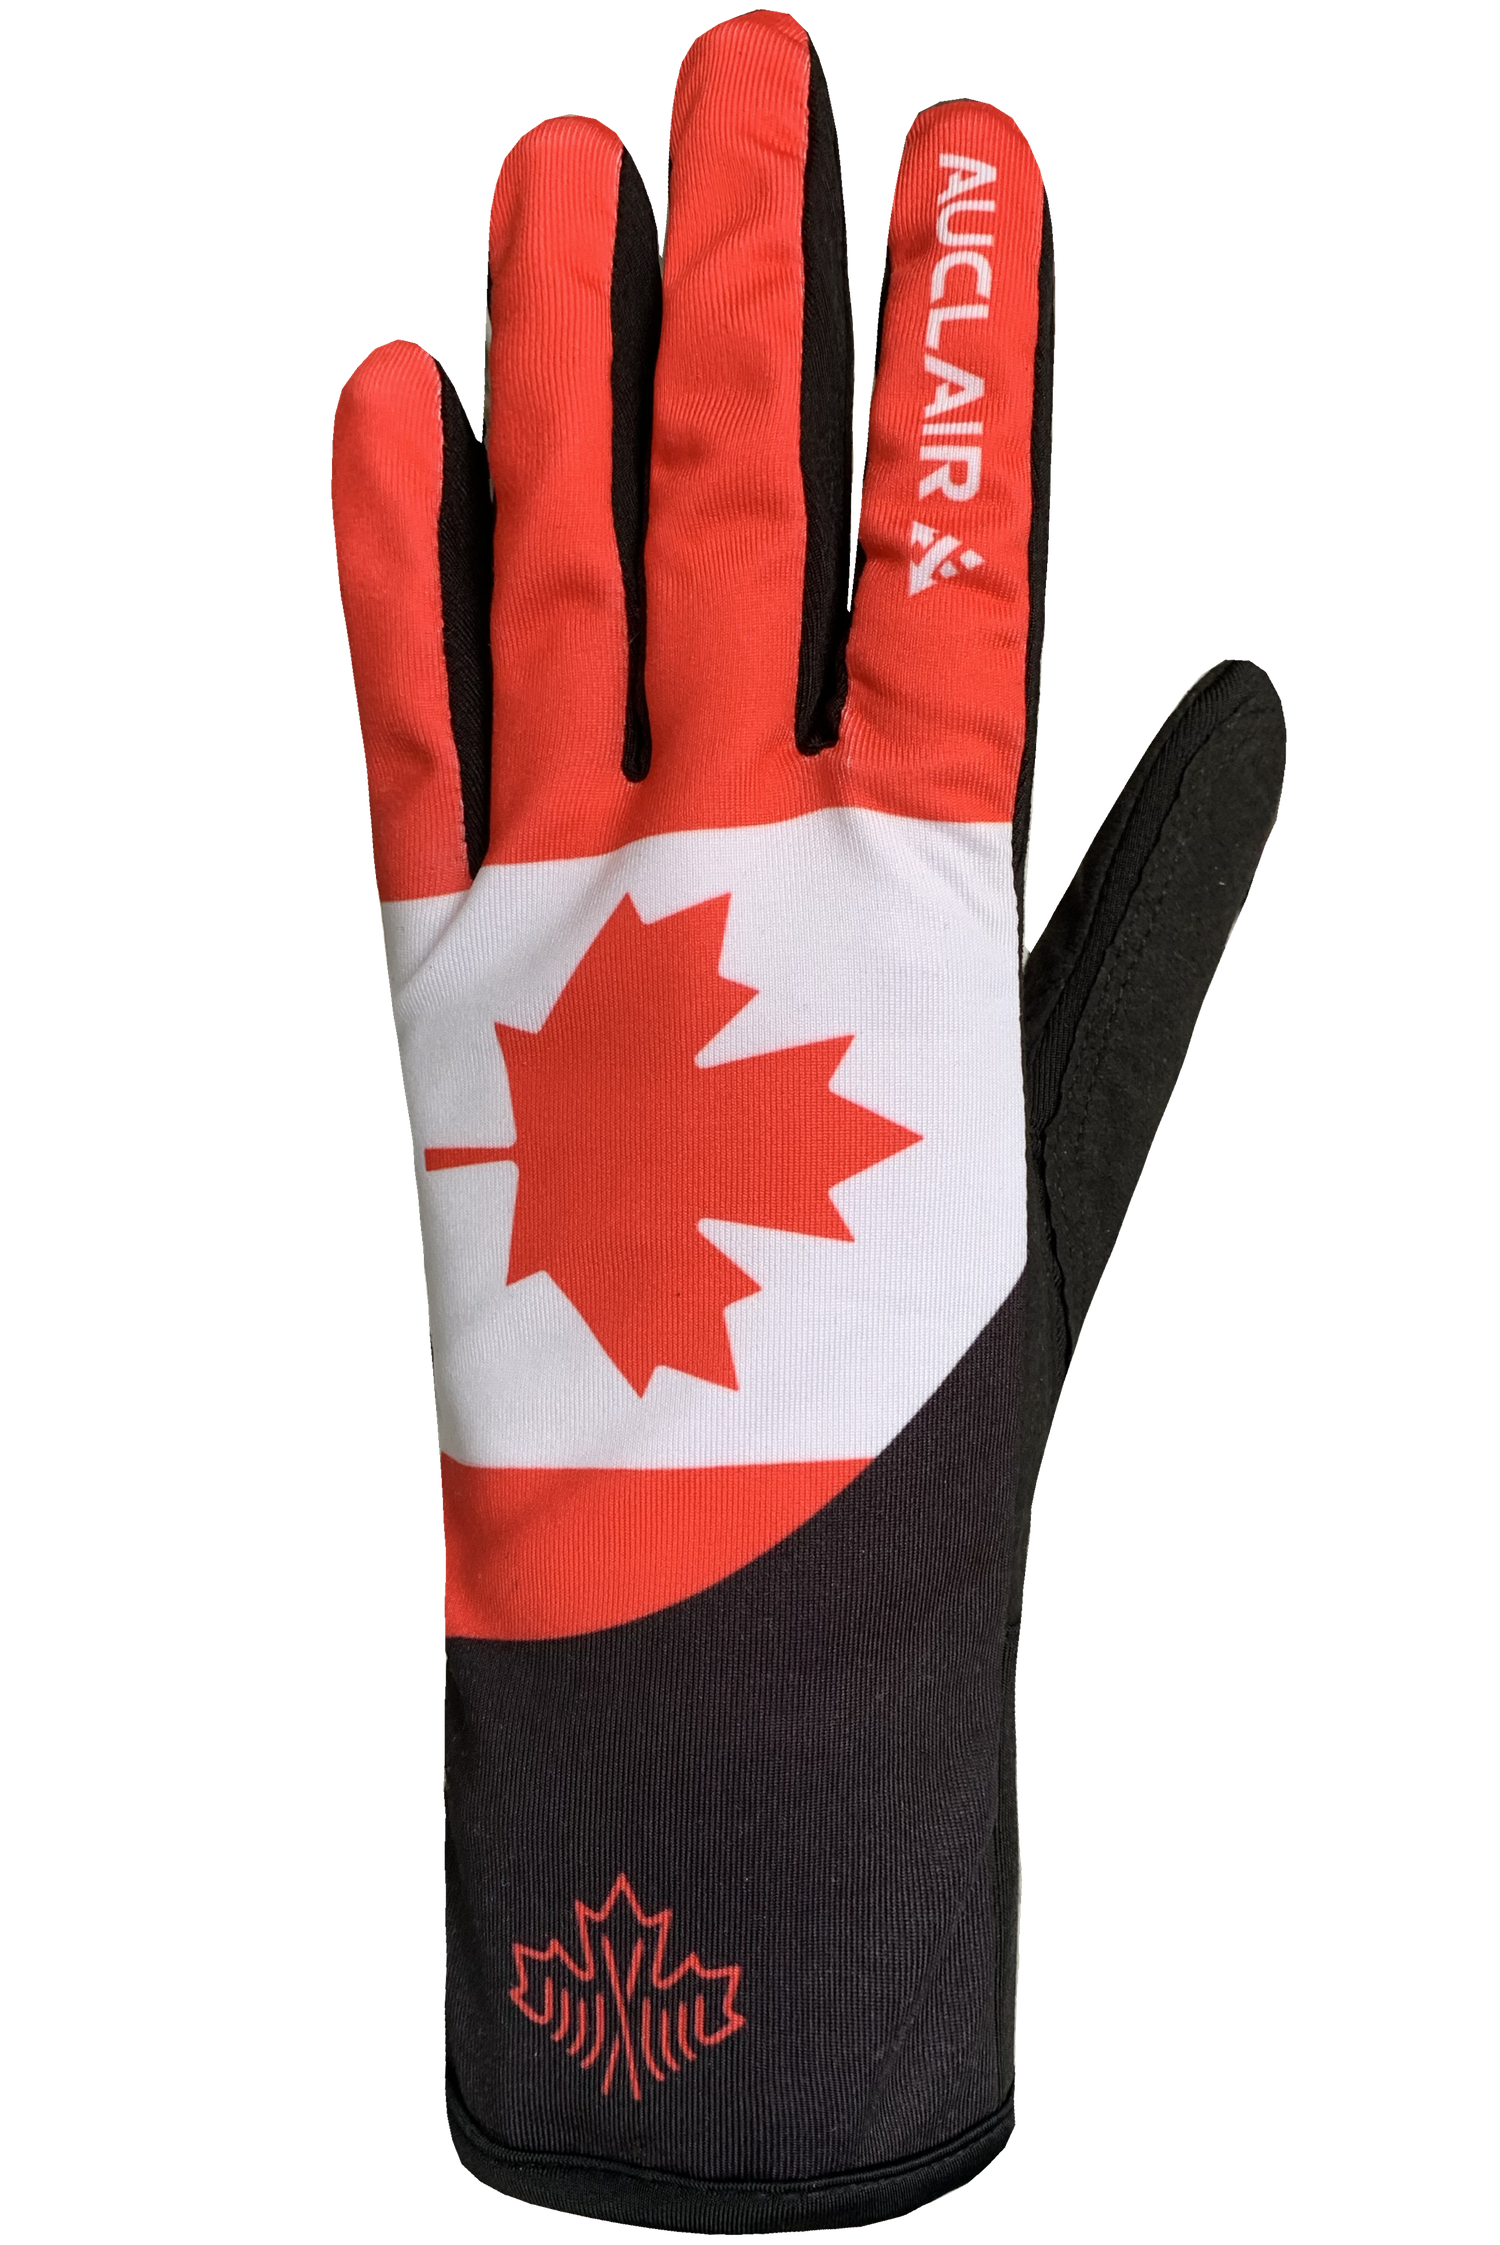 Maple Leaf Race Gloves - Women, Red/White/Black